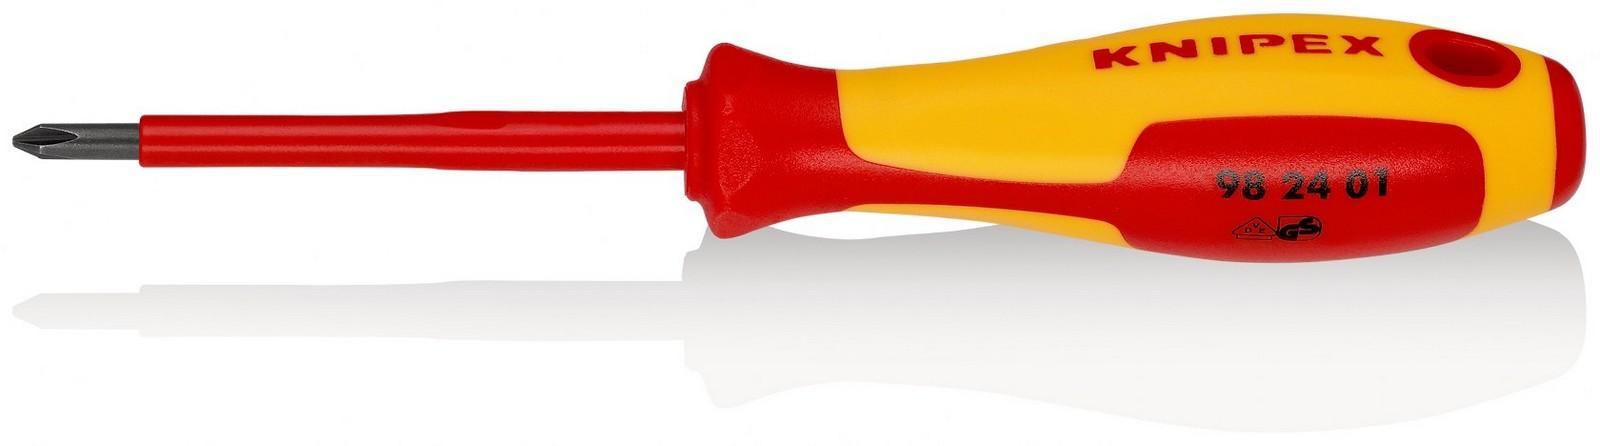 KNIPEX Odvijač krstasti 1000V VDE PH1 98 24 01 crveno-žuti